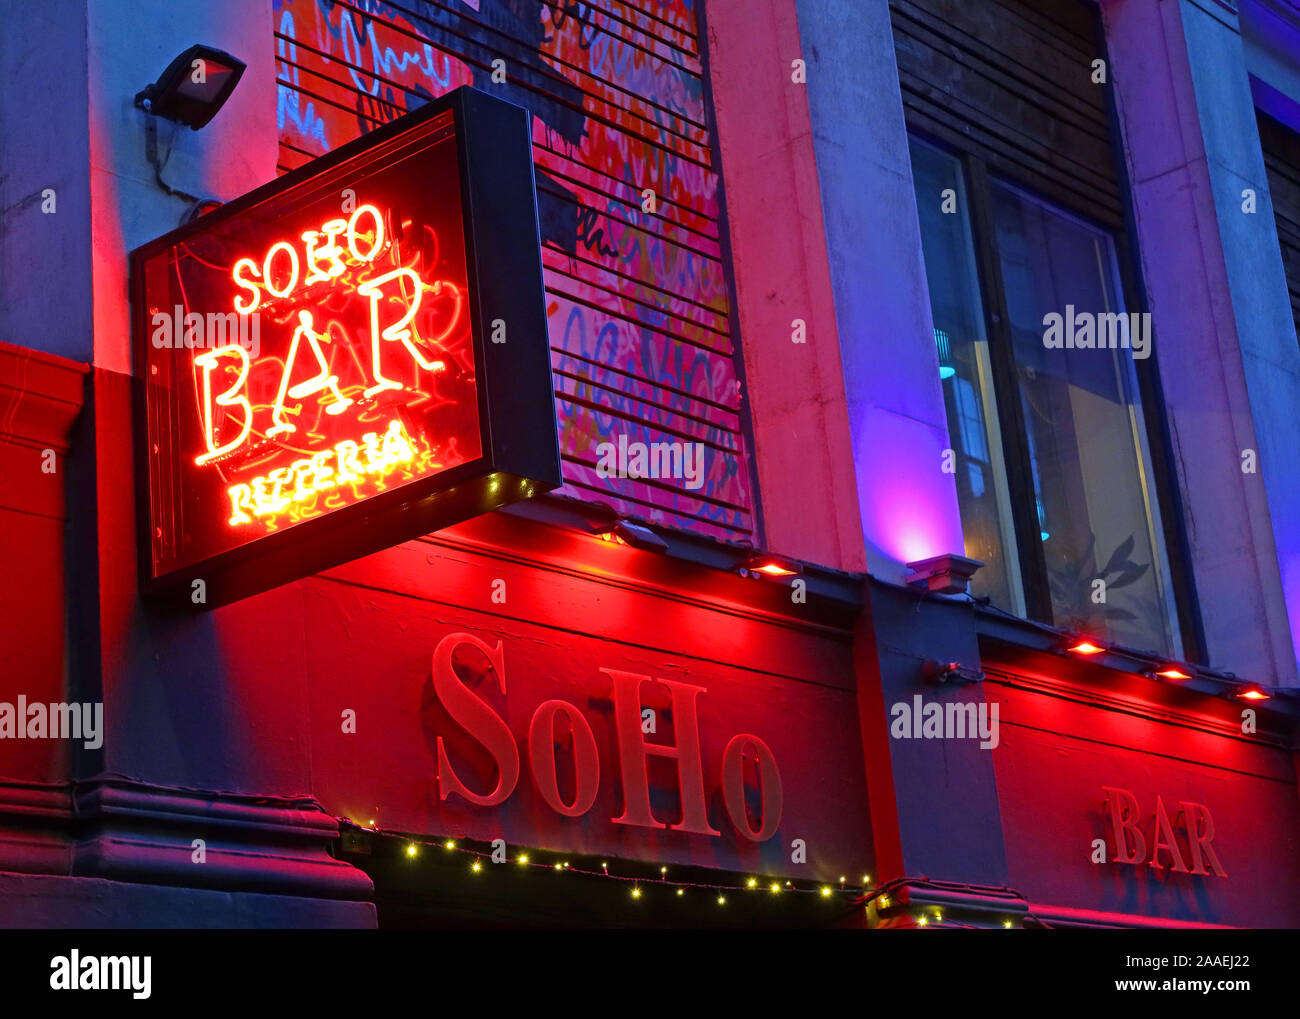 Soho SoHo Bar, Pizzeria et bar à cocktails, enseigne au néon rouge, 84 Miller, Centre-ville St, Glasgow, Scotland, UK, G1 1DT Banque D'Images